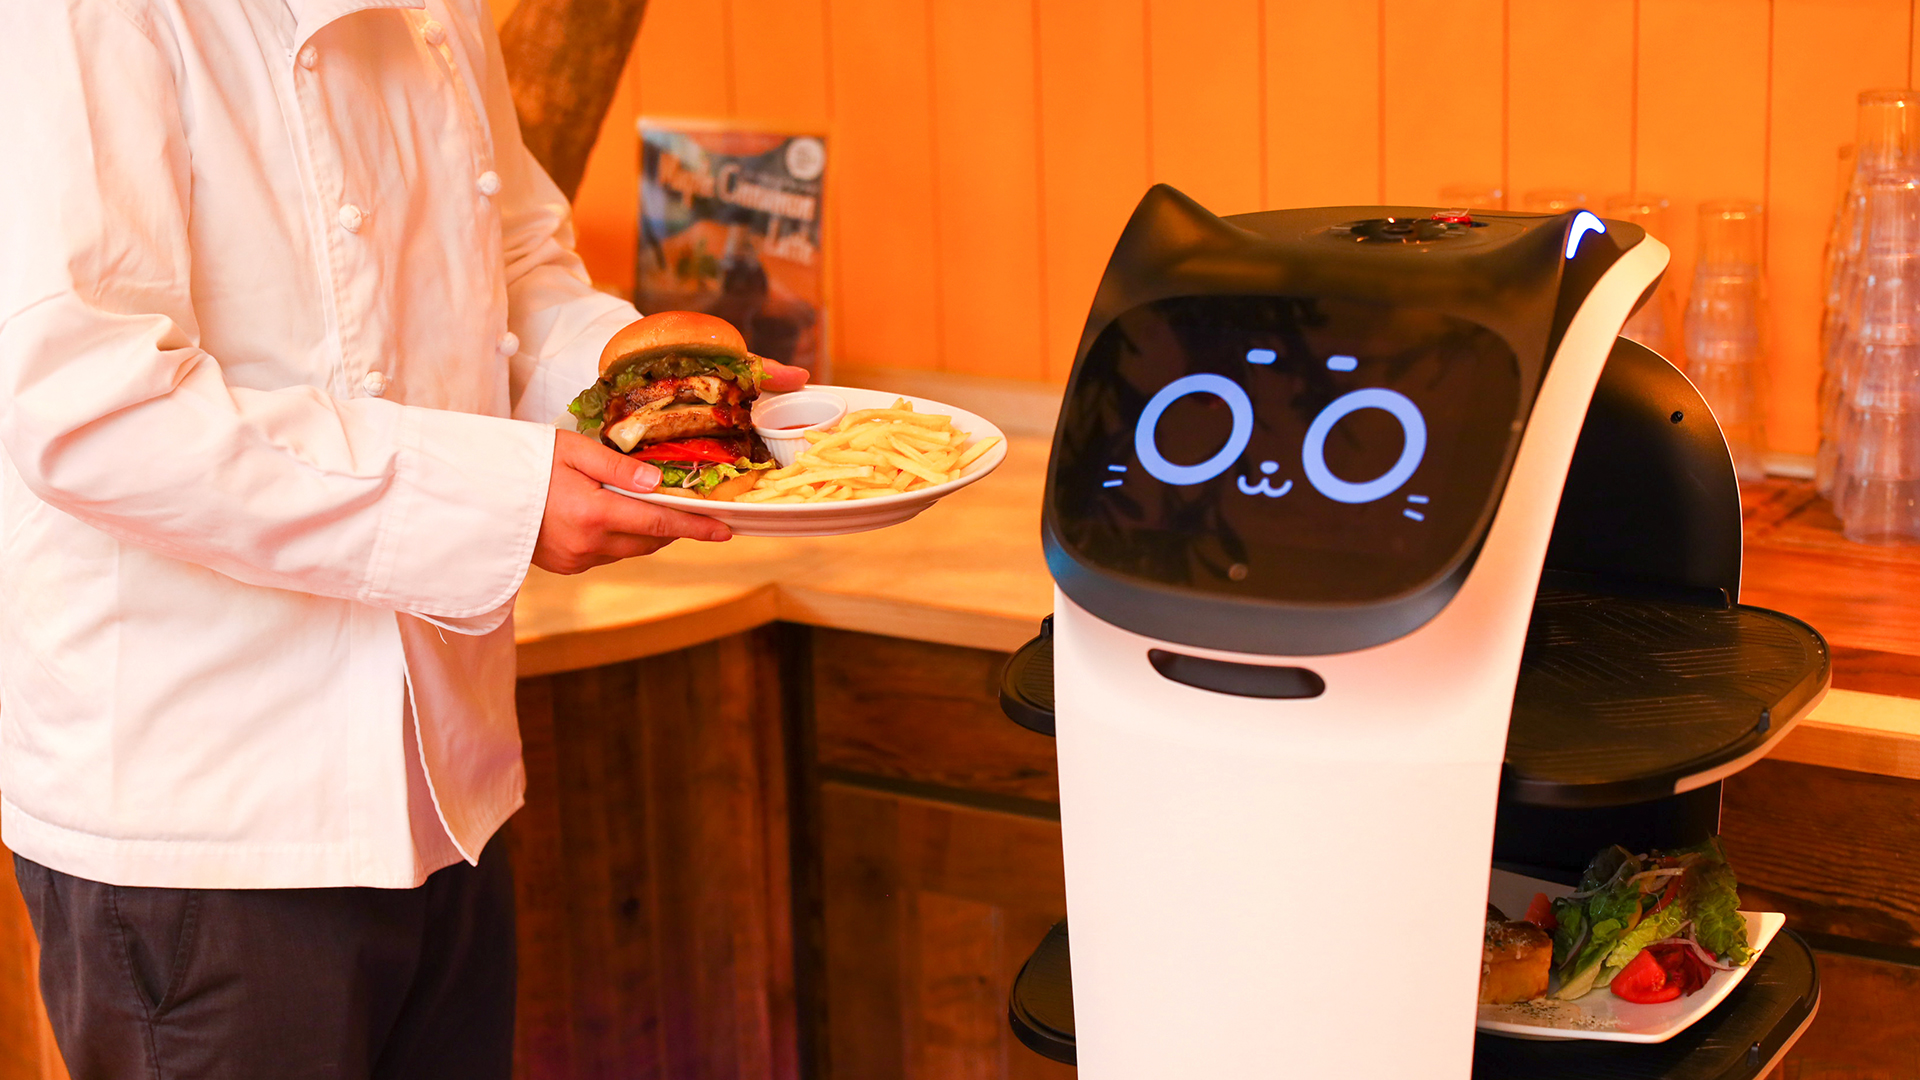 配膳ロボットに関する世代別の意識調査】飲食店での配膳ロボット接客、「抵抗感なし」シニア世代が最も多く半数の49.5%が回答！Z世代の見解は？ | DFA Robotics